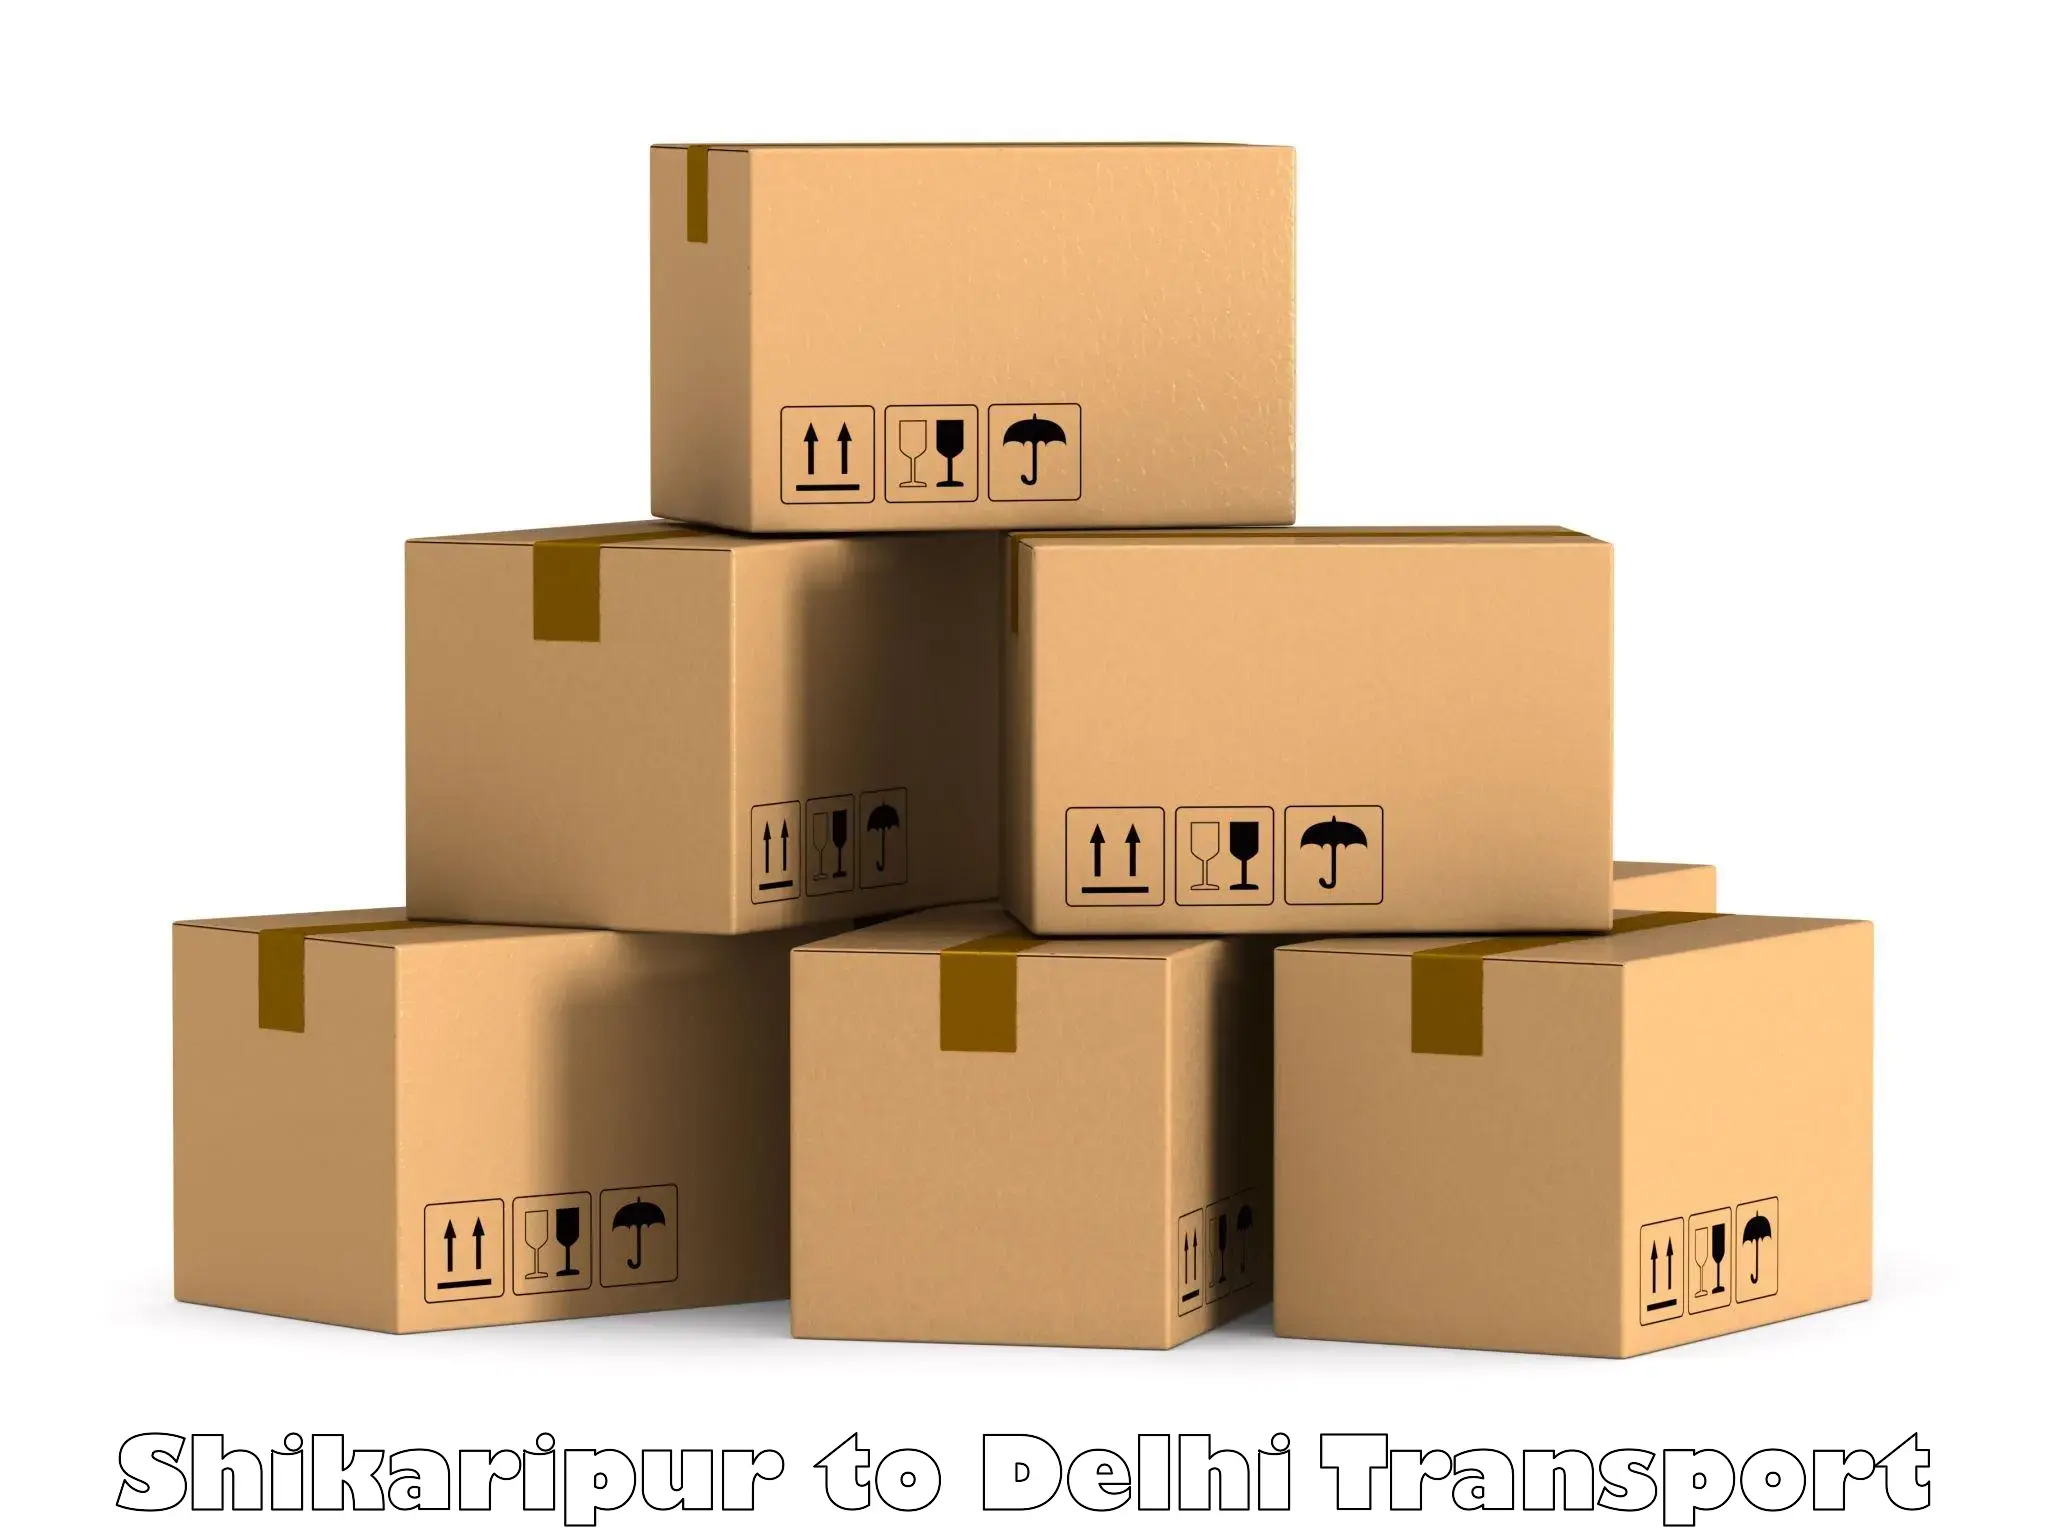 Intercity goods transport Shikaripur to Delhi